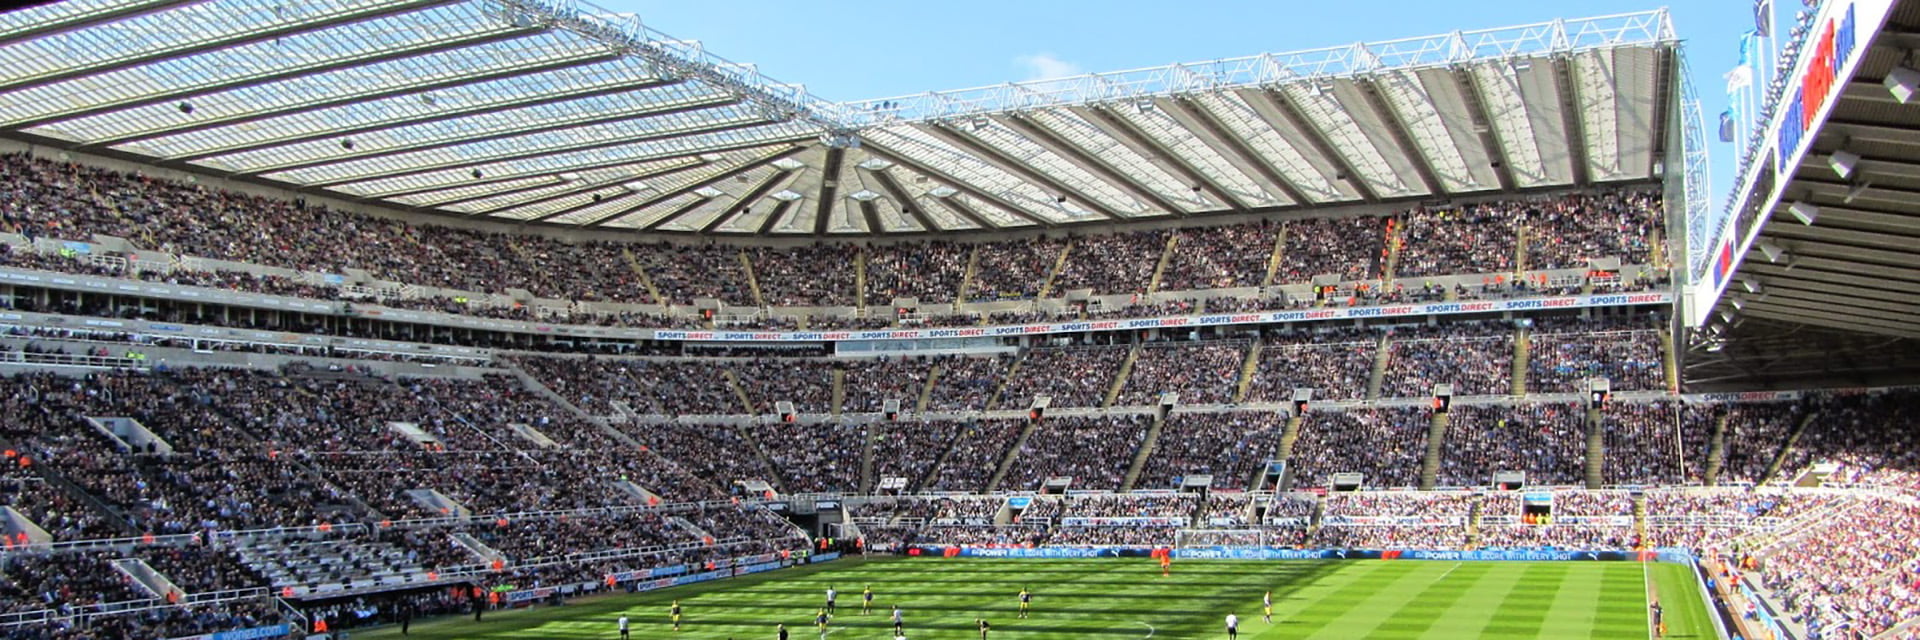 Newcastle United - Crystal Palace, 6 septemberom 15:00